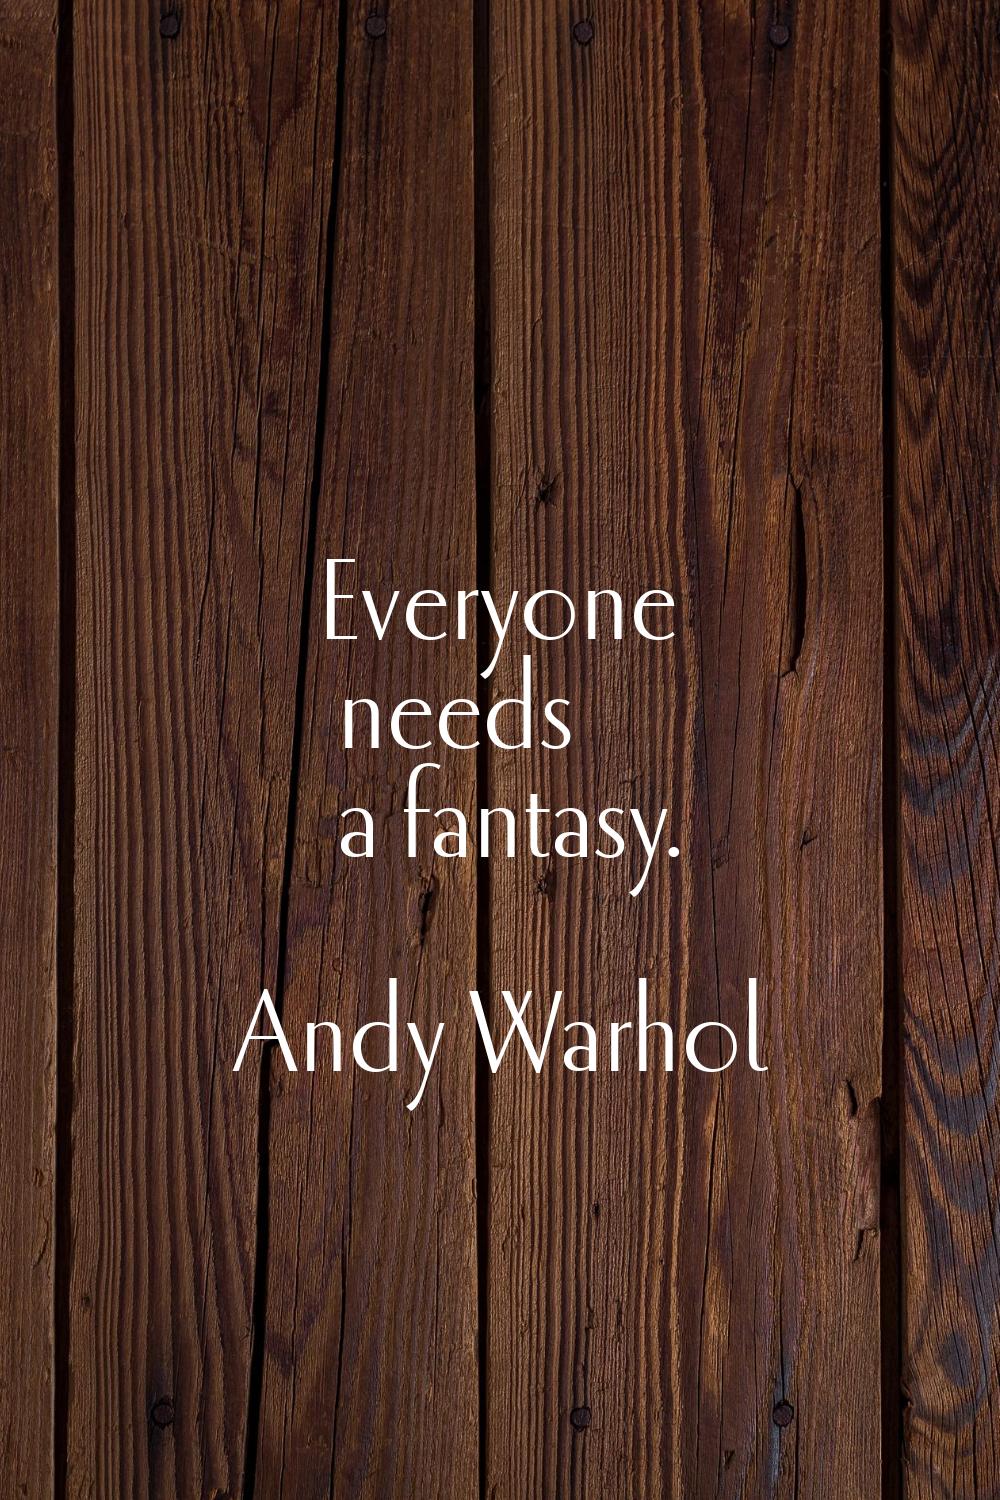 Everyone needs a fantasy.